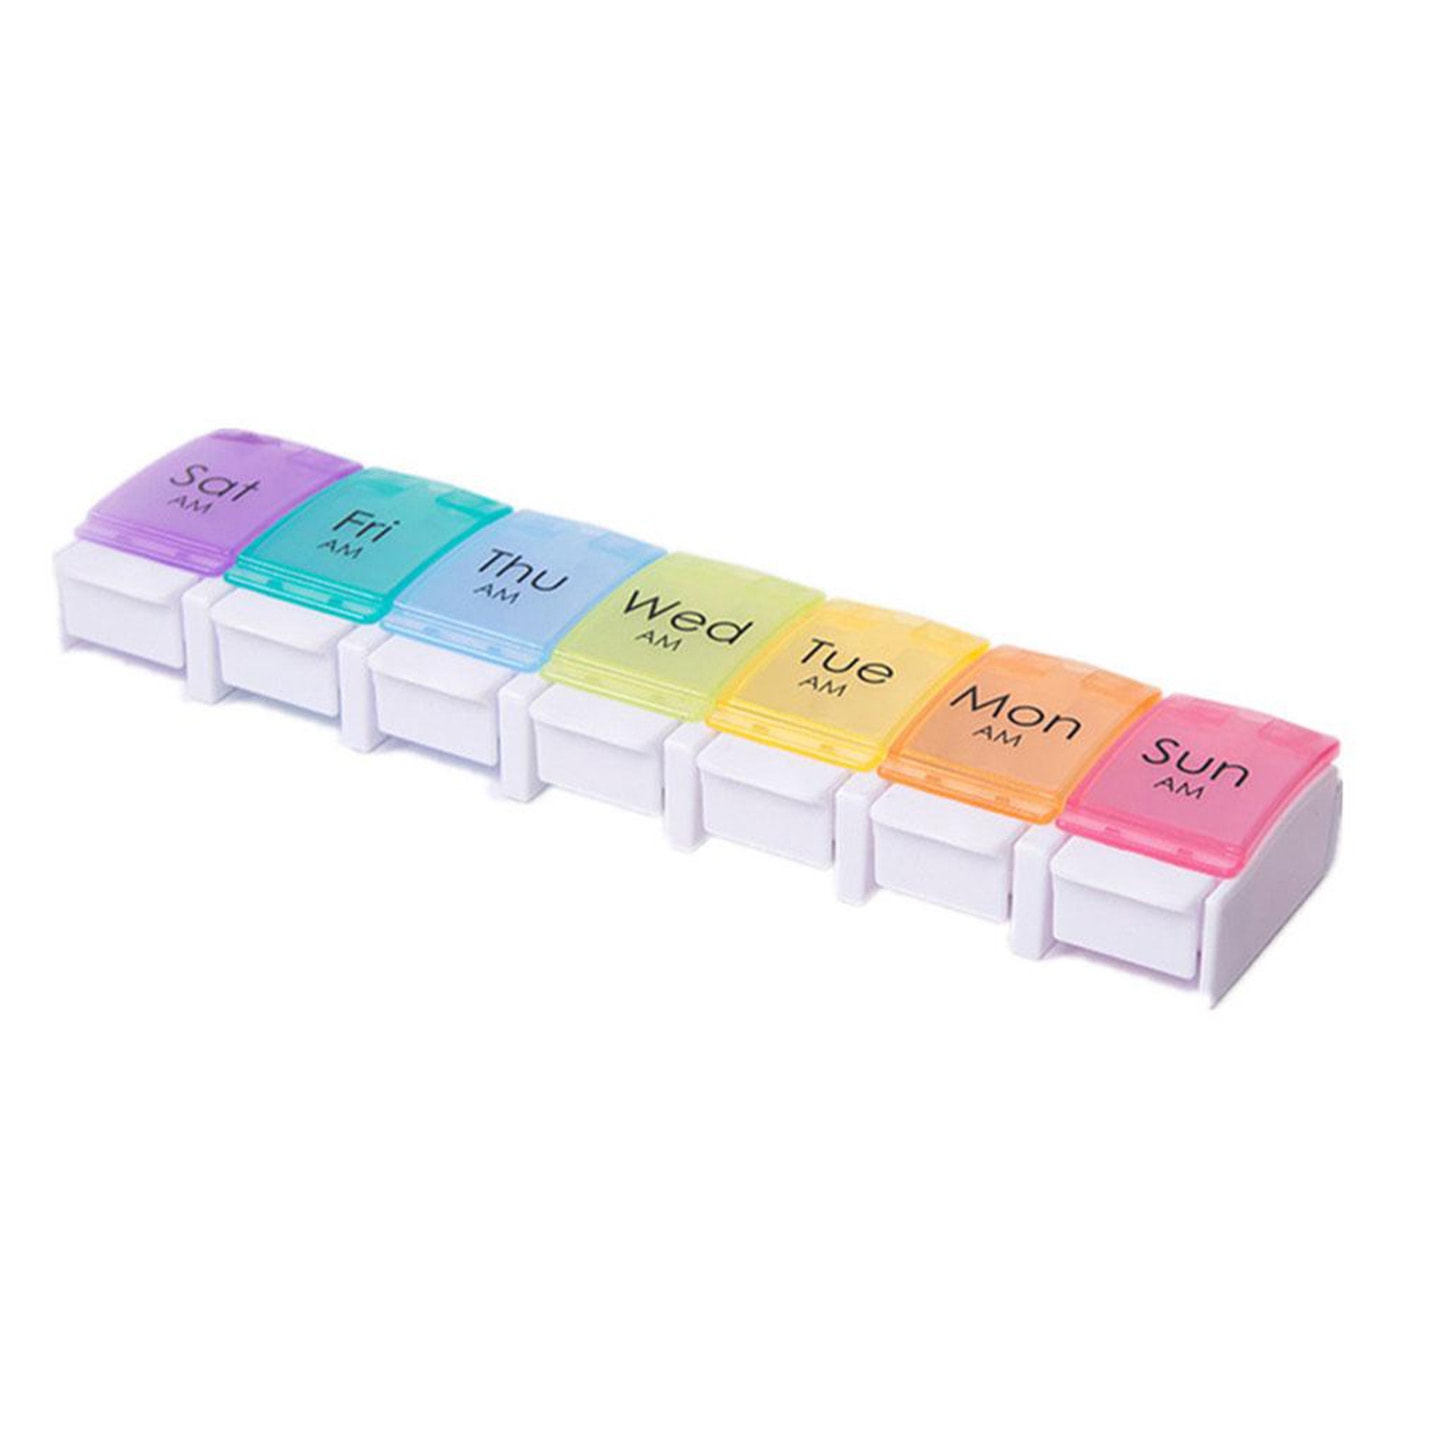 Ukentlig pilleboks i syv farger (1 av 10)